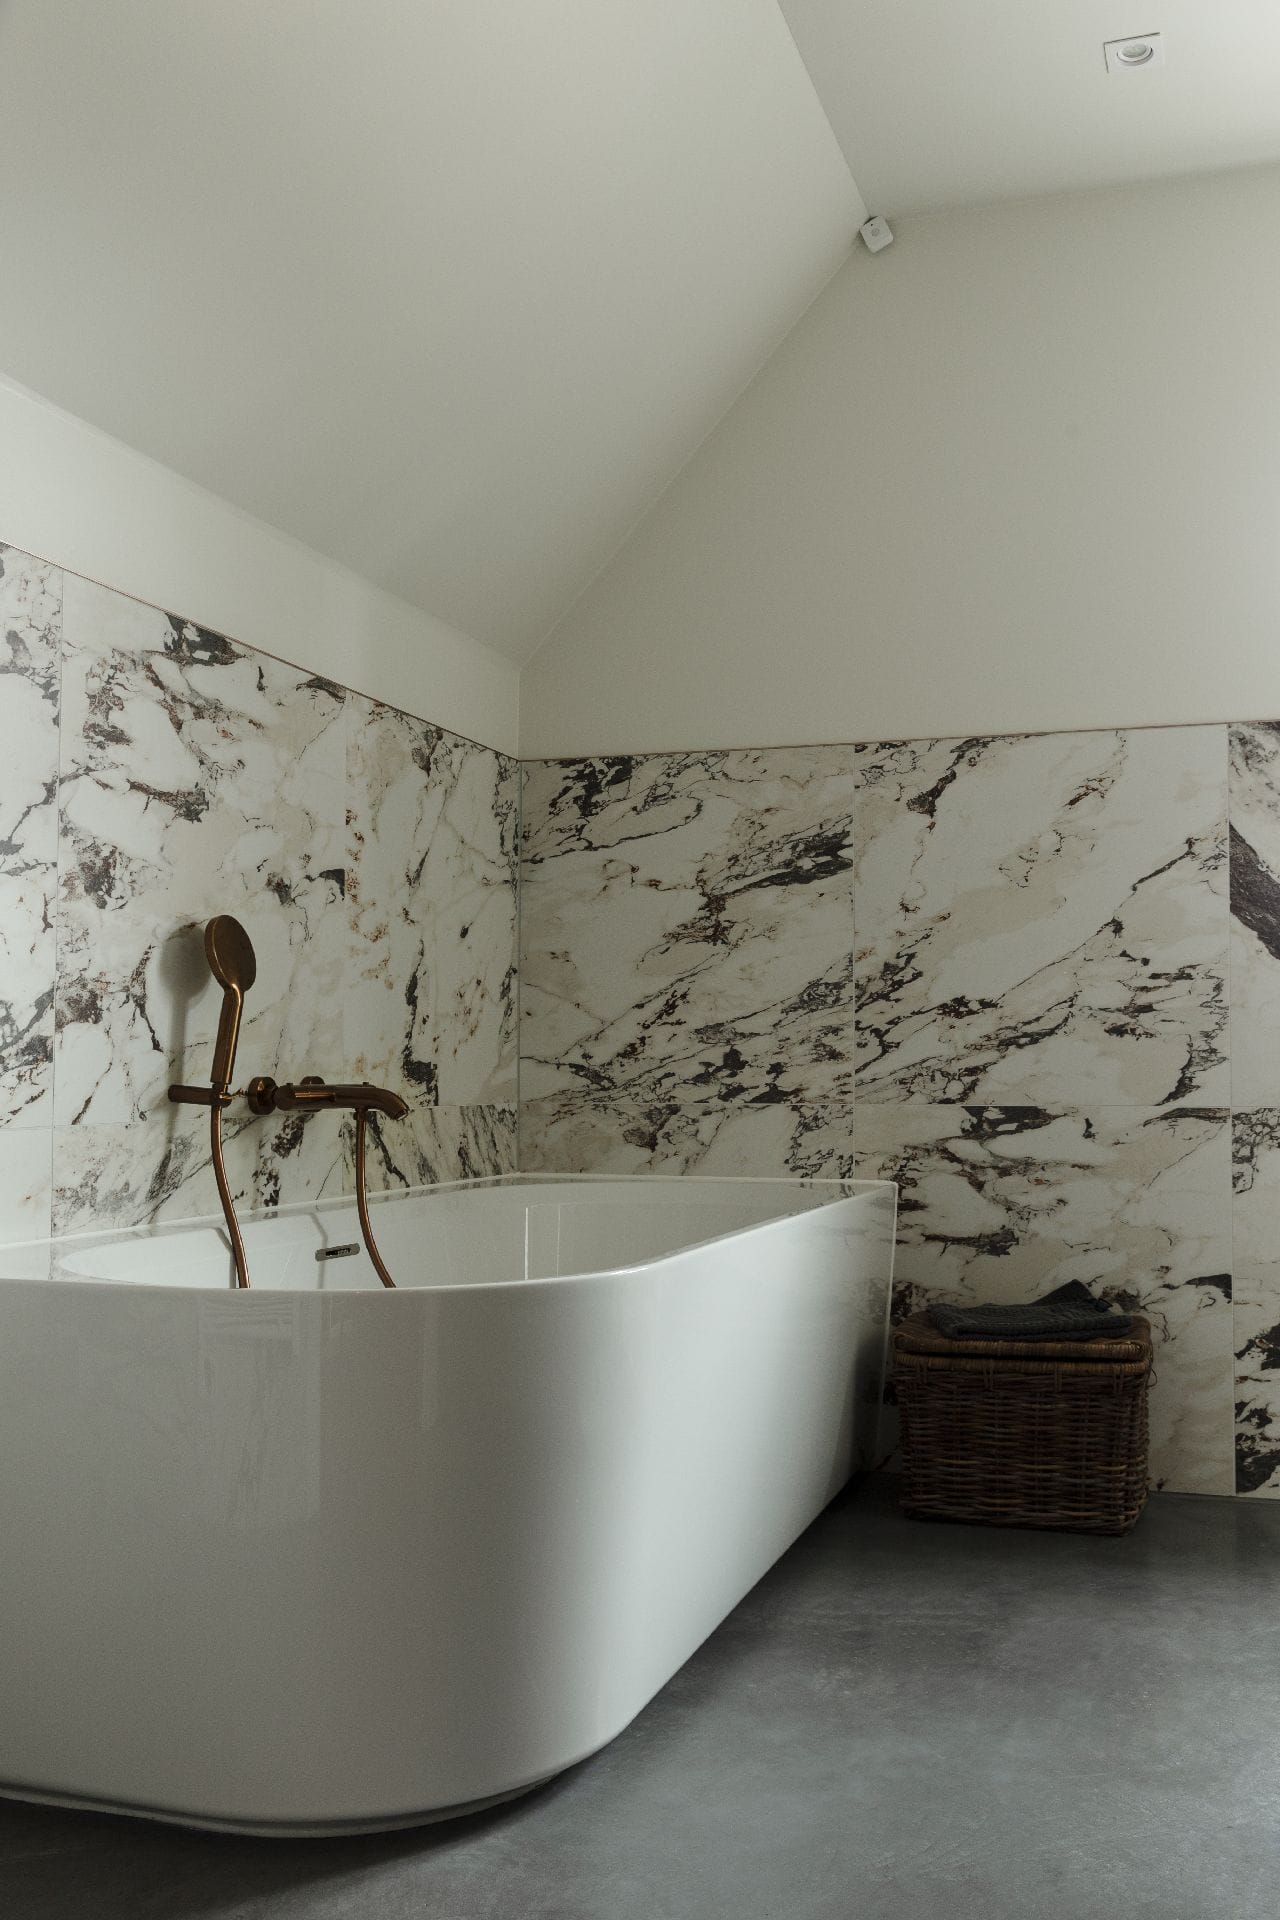 Badkamer met een gevlinderde betonvloer in Brandwijk. Op de vloer staat een wit bad en aan de wand zitten marmeren tegels.